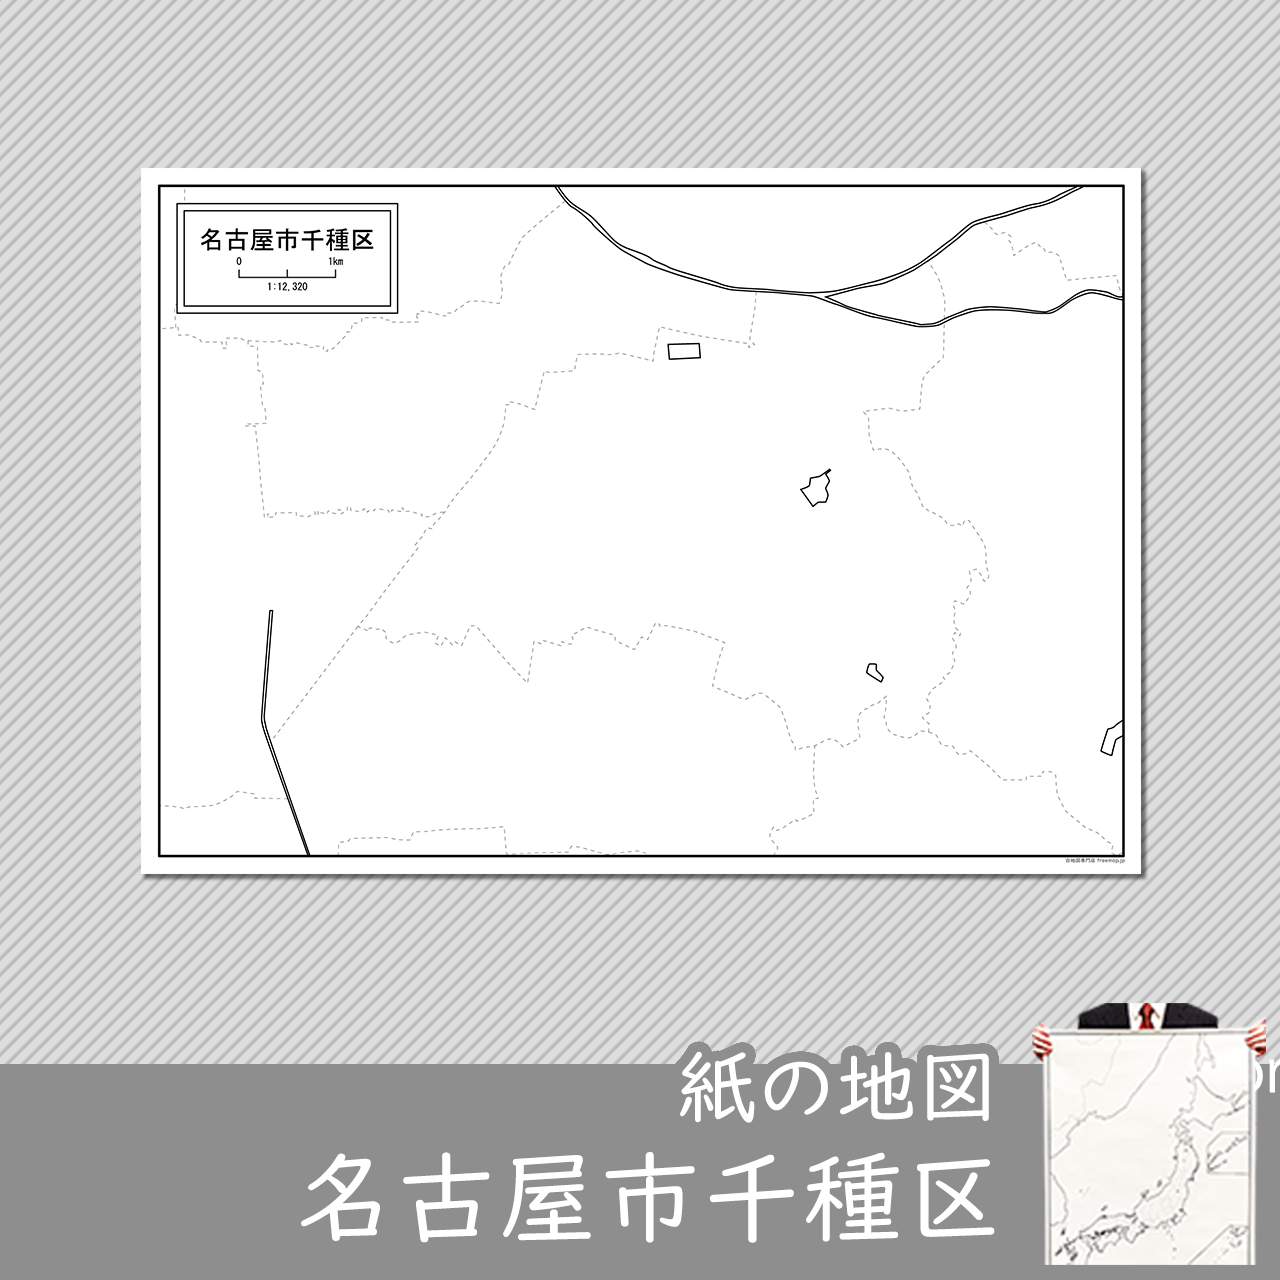 名古屋市千種区の紙の白地図のサムネイル